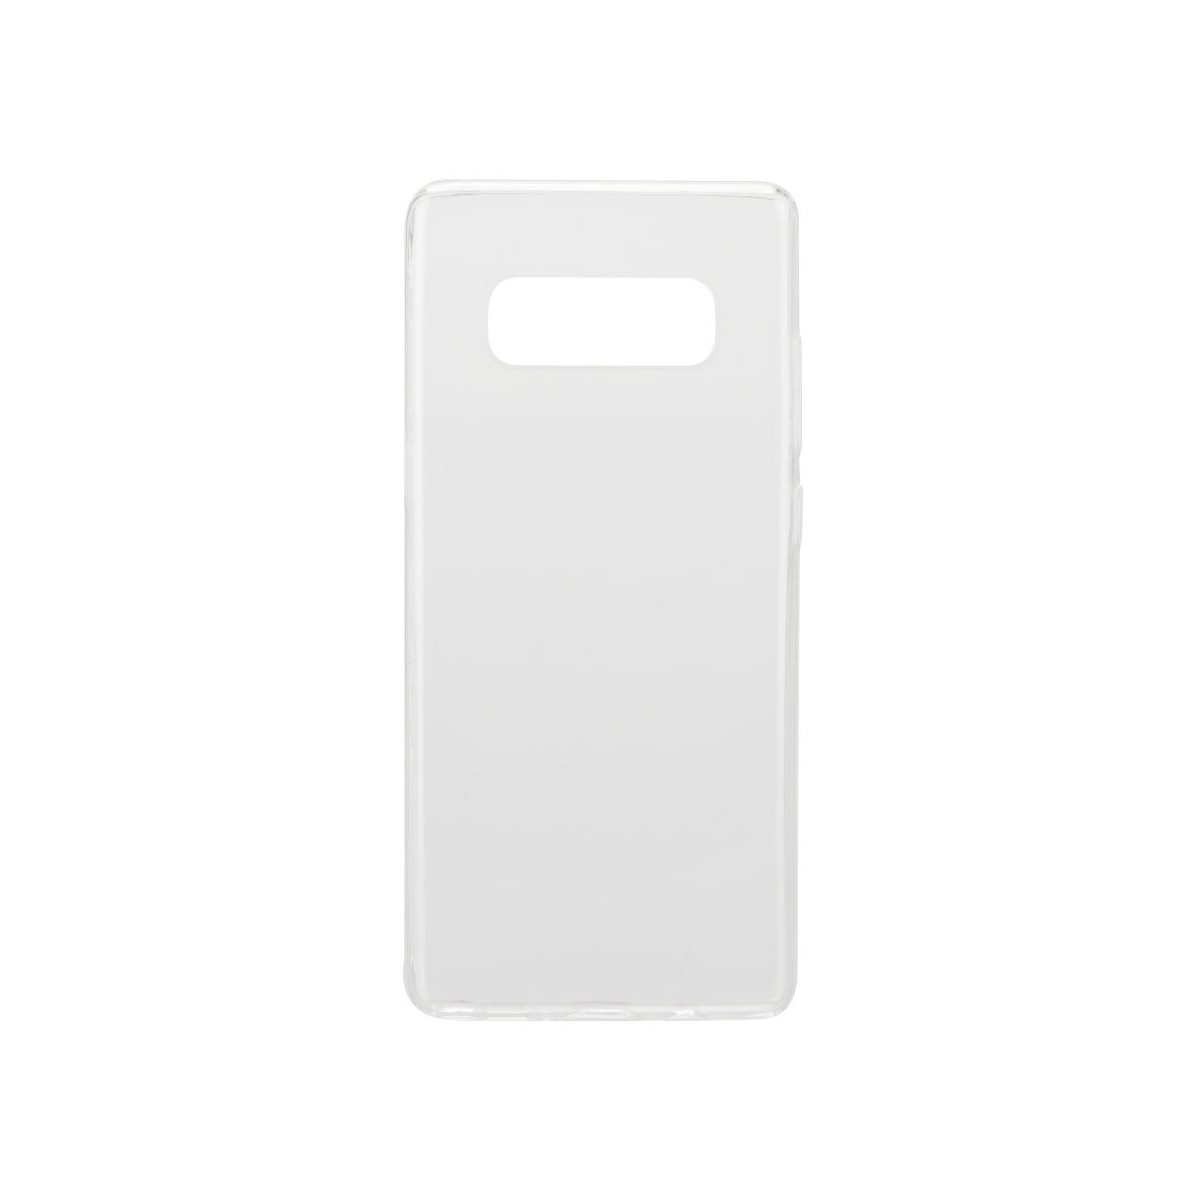 Coque Galaxy Note 8 Transparente souple - Crazy Kase